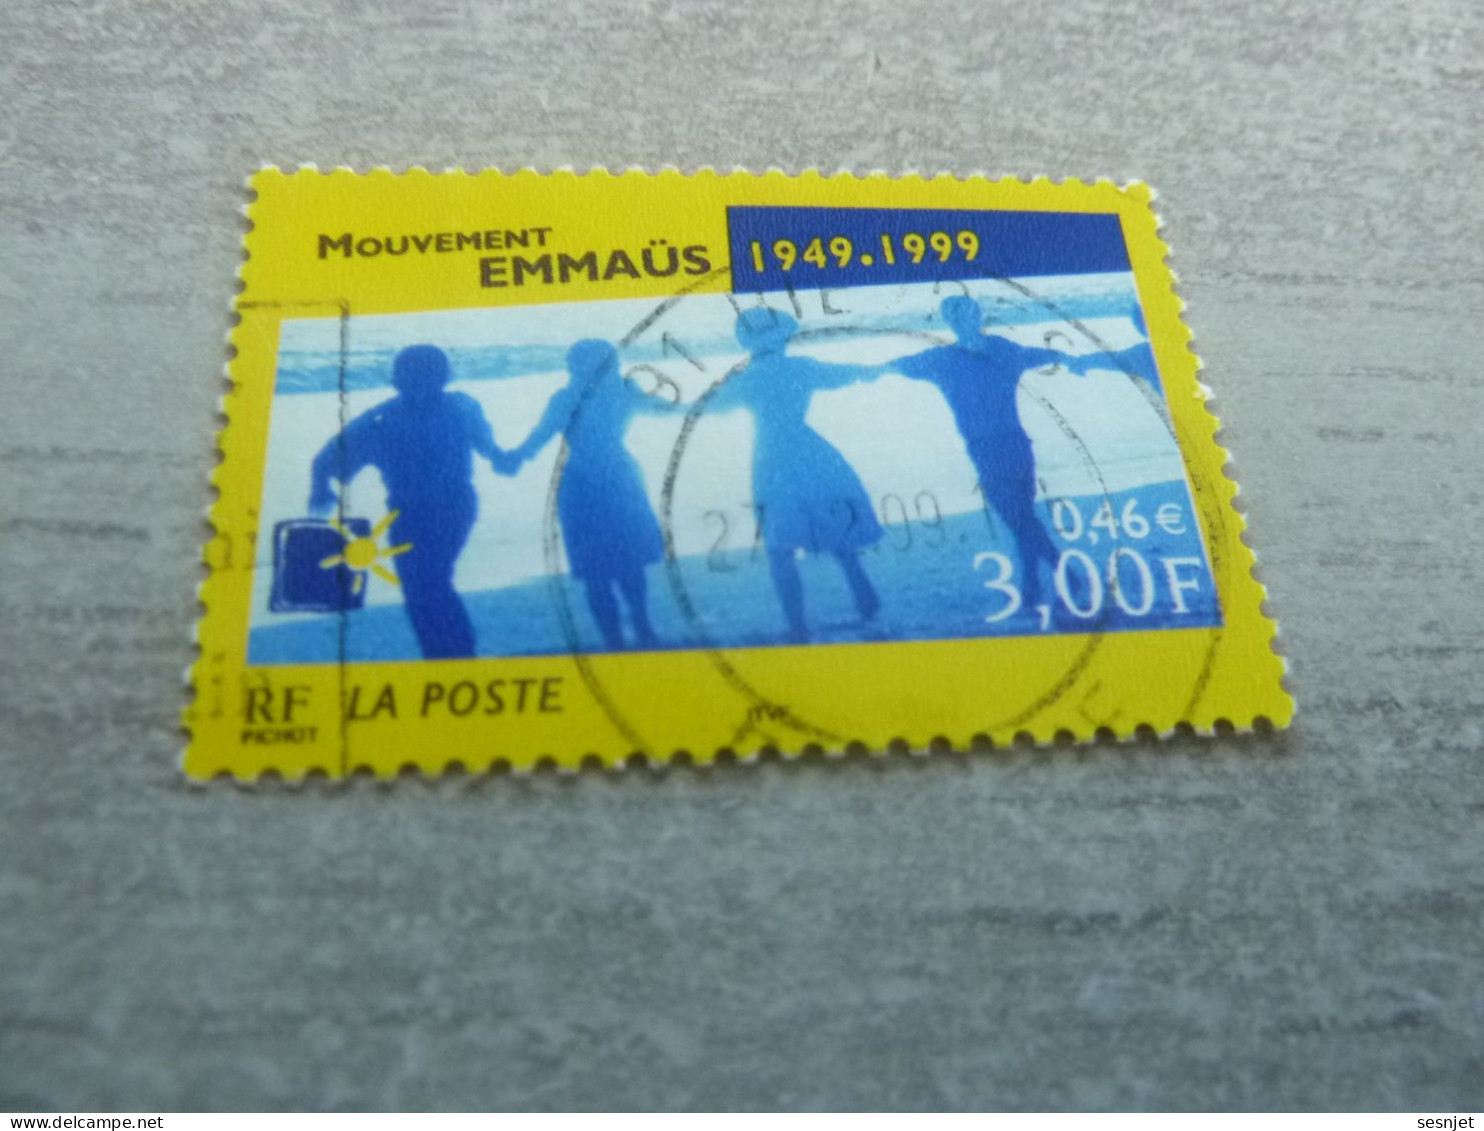 Cinquantenaire Du Mouvement Emmaüs - 3f. (0.46 €) - Yt 3282 - Multicolore - Oblitéré - Année 1999 - - Oblitérés